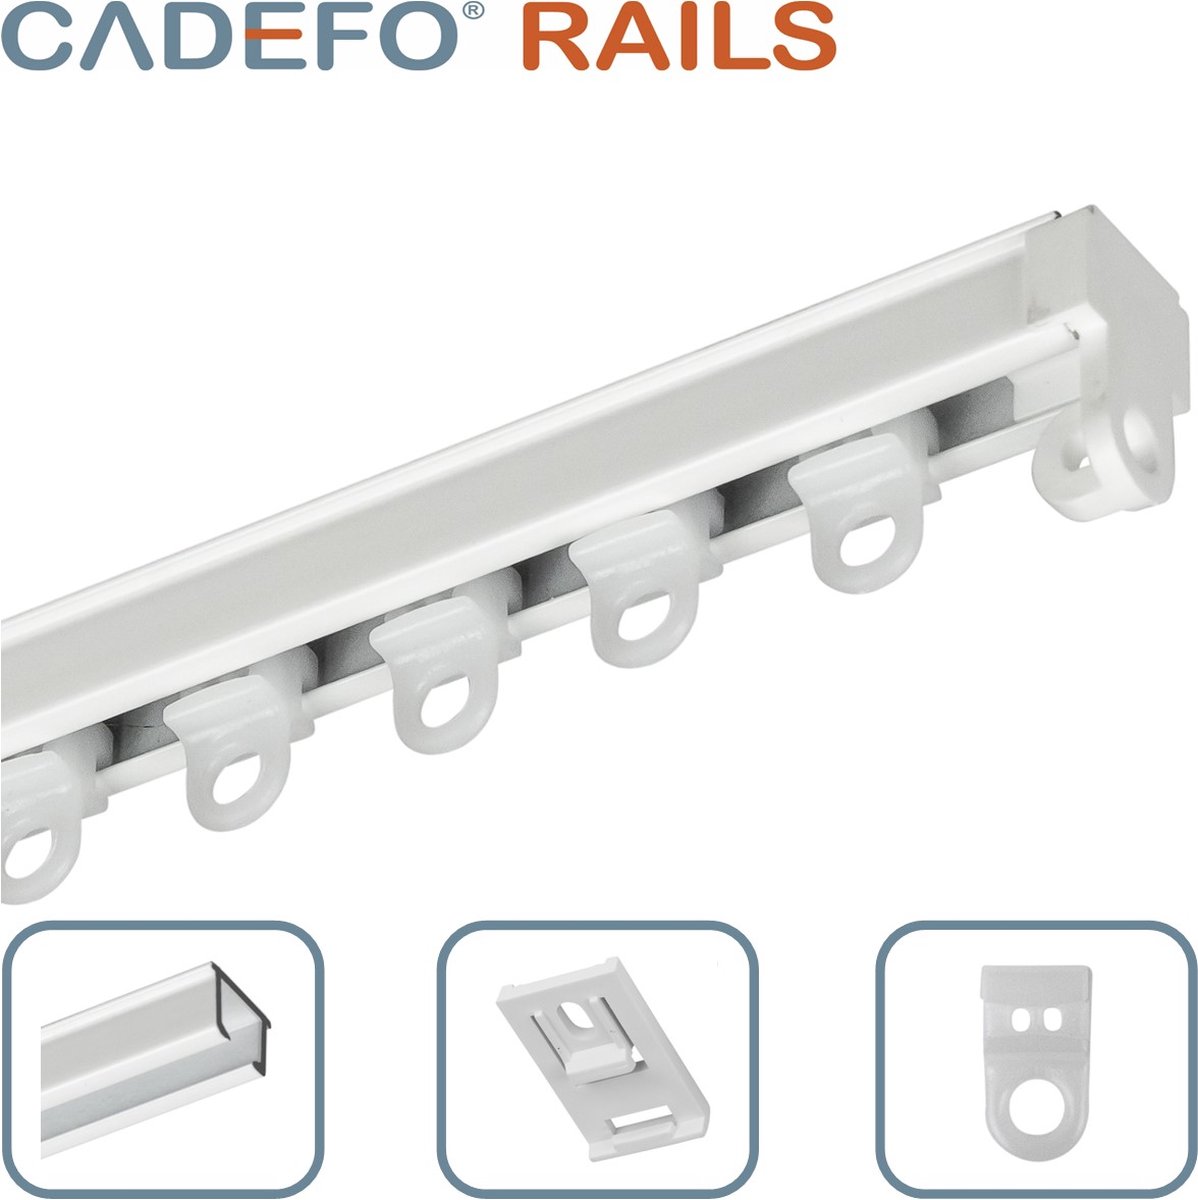 CADEFO RAILS (351 - 400 cm) Gordijnrails - Compleet op maat! - UIT 1 STUK - Leverbaar tot 6 meter - Plafondbevestiging - Lengte 352 cm